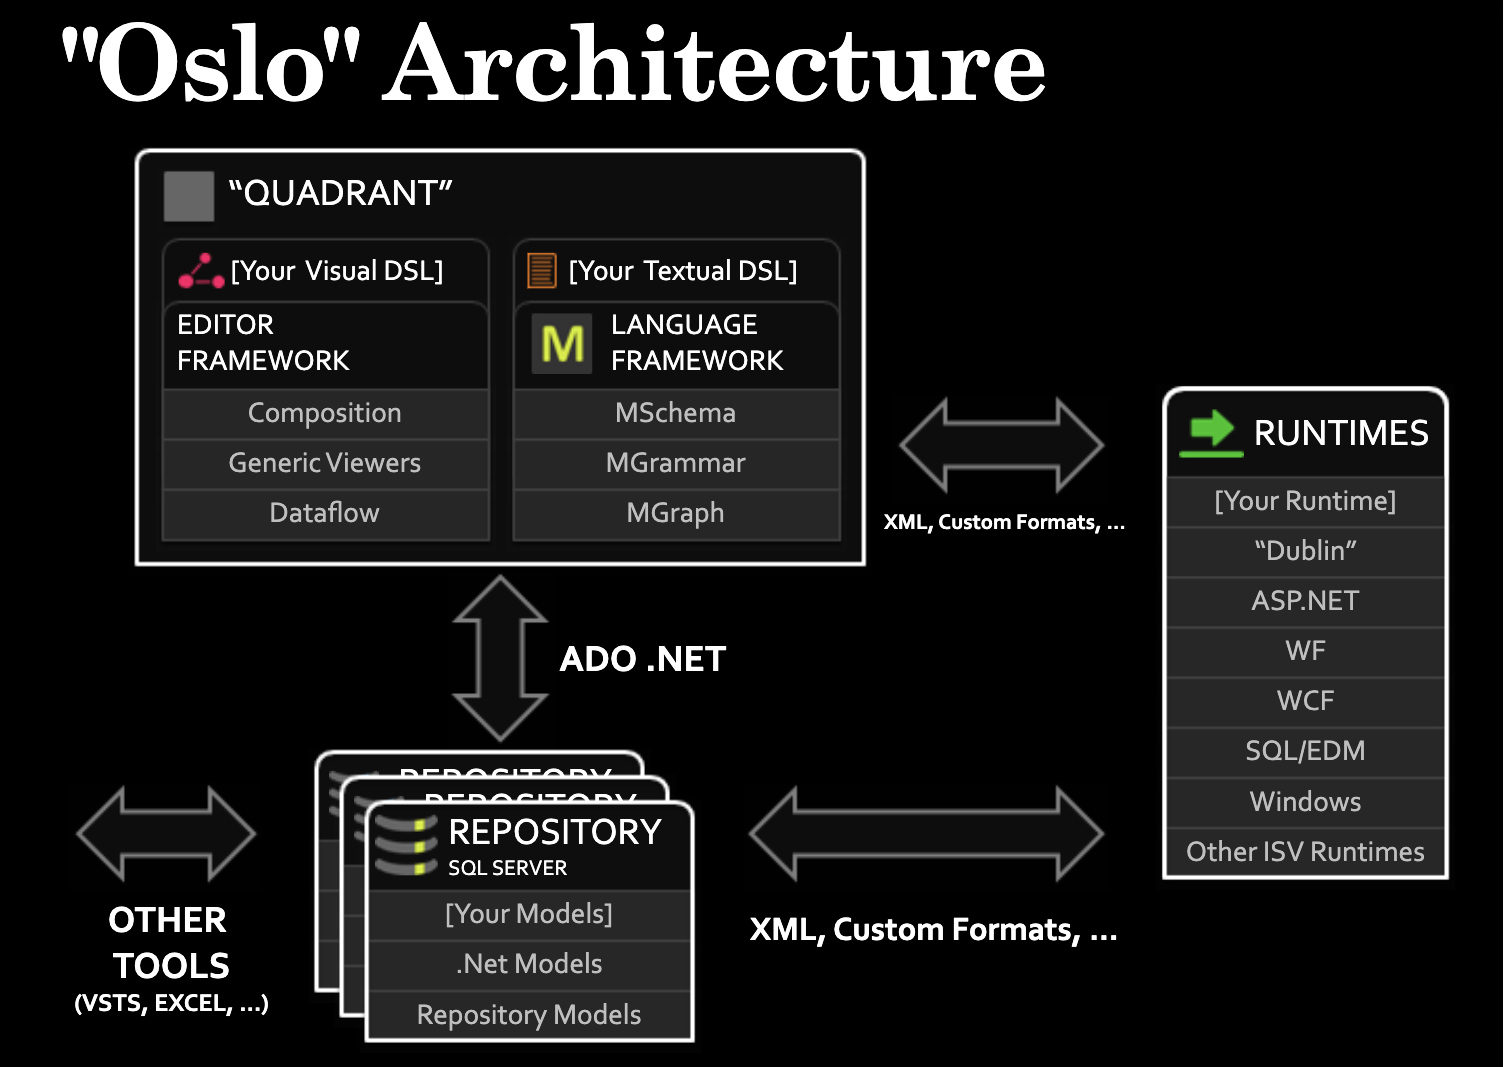 Microsoft Oslo Architecture Slide (2008)